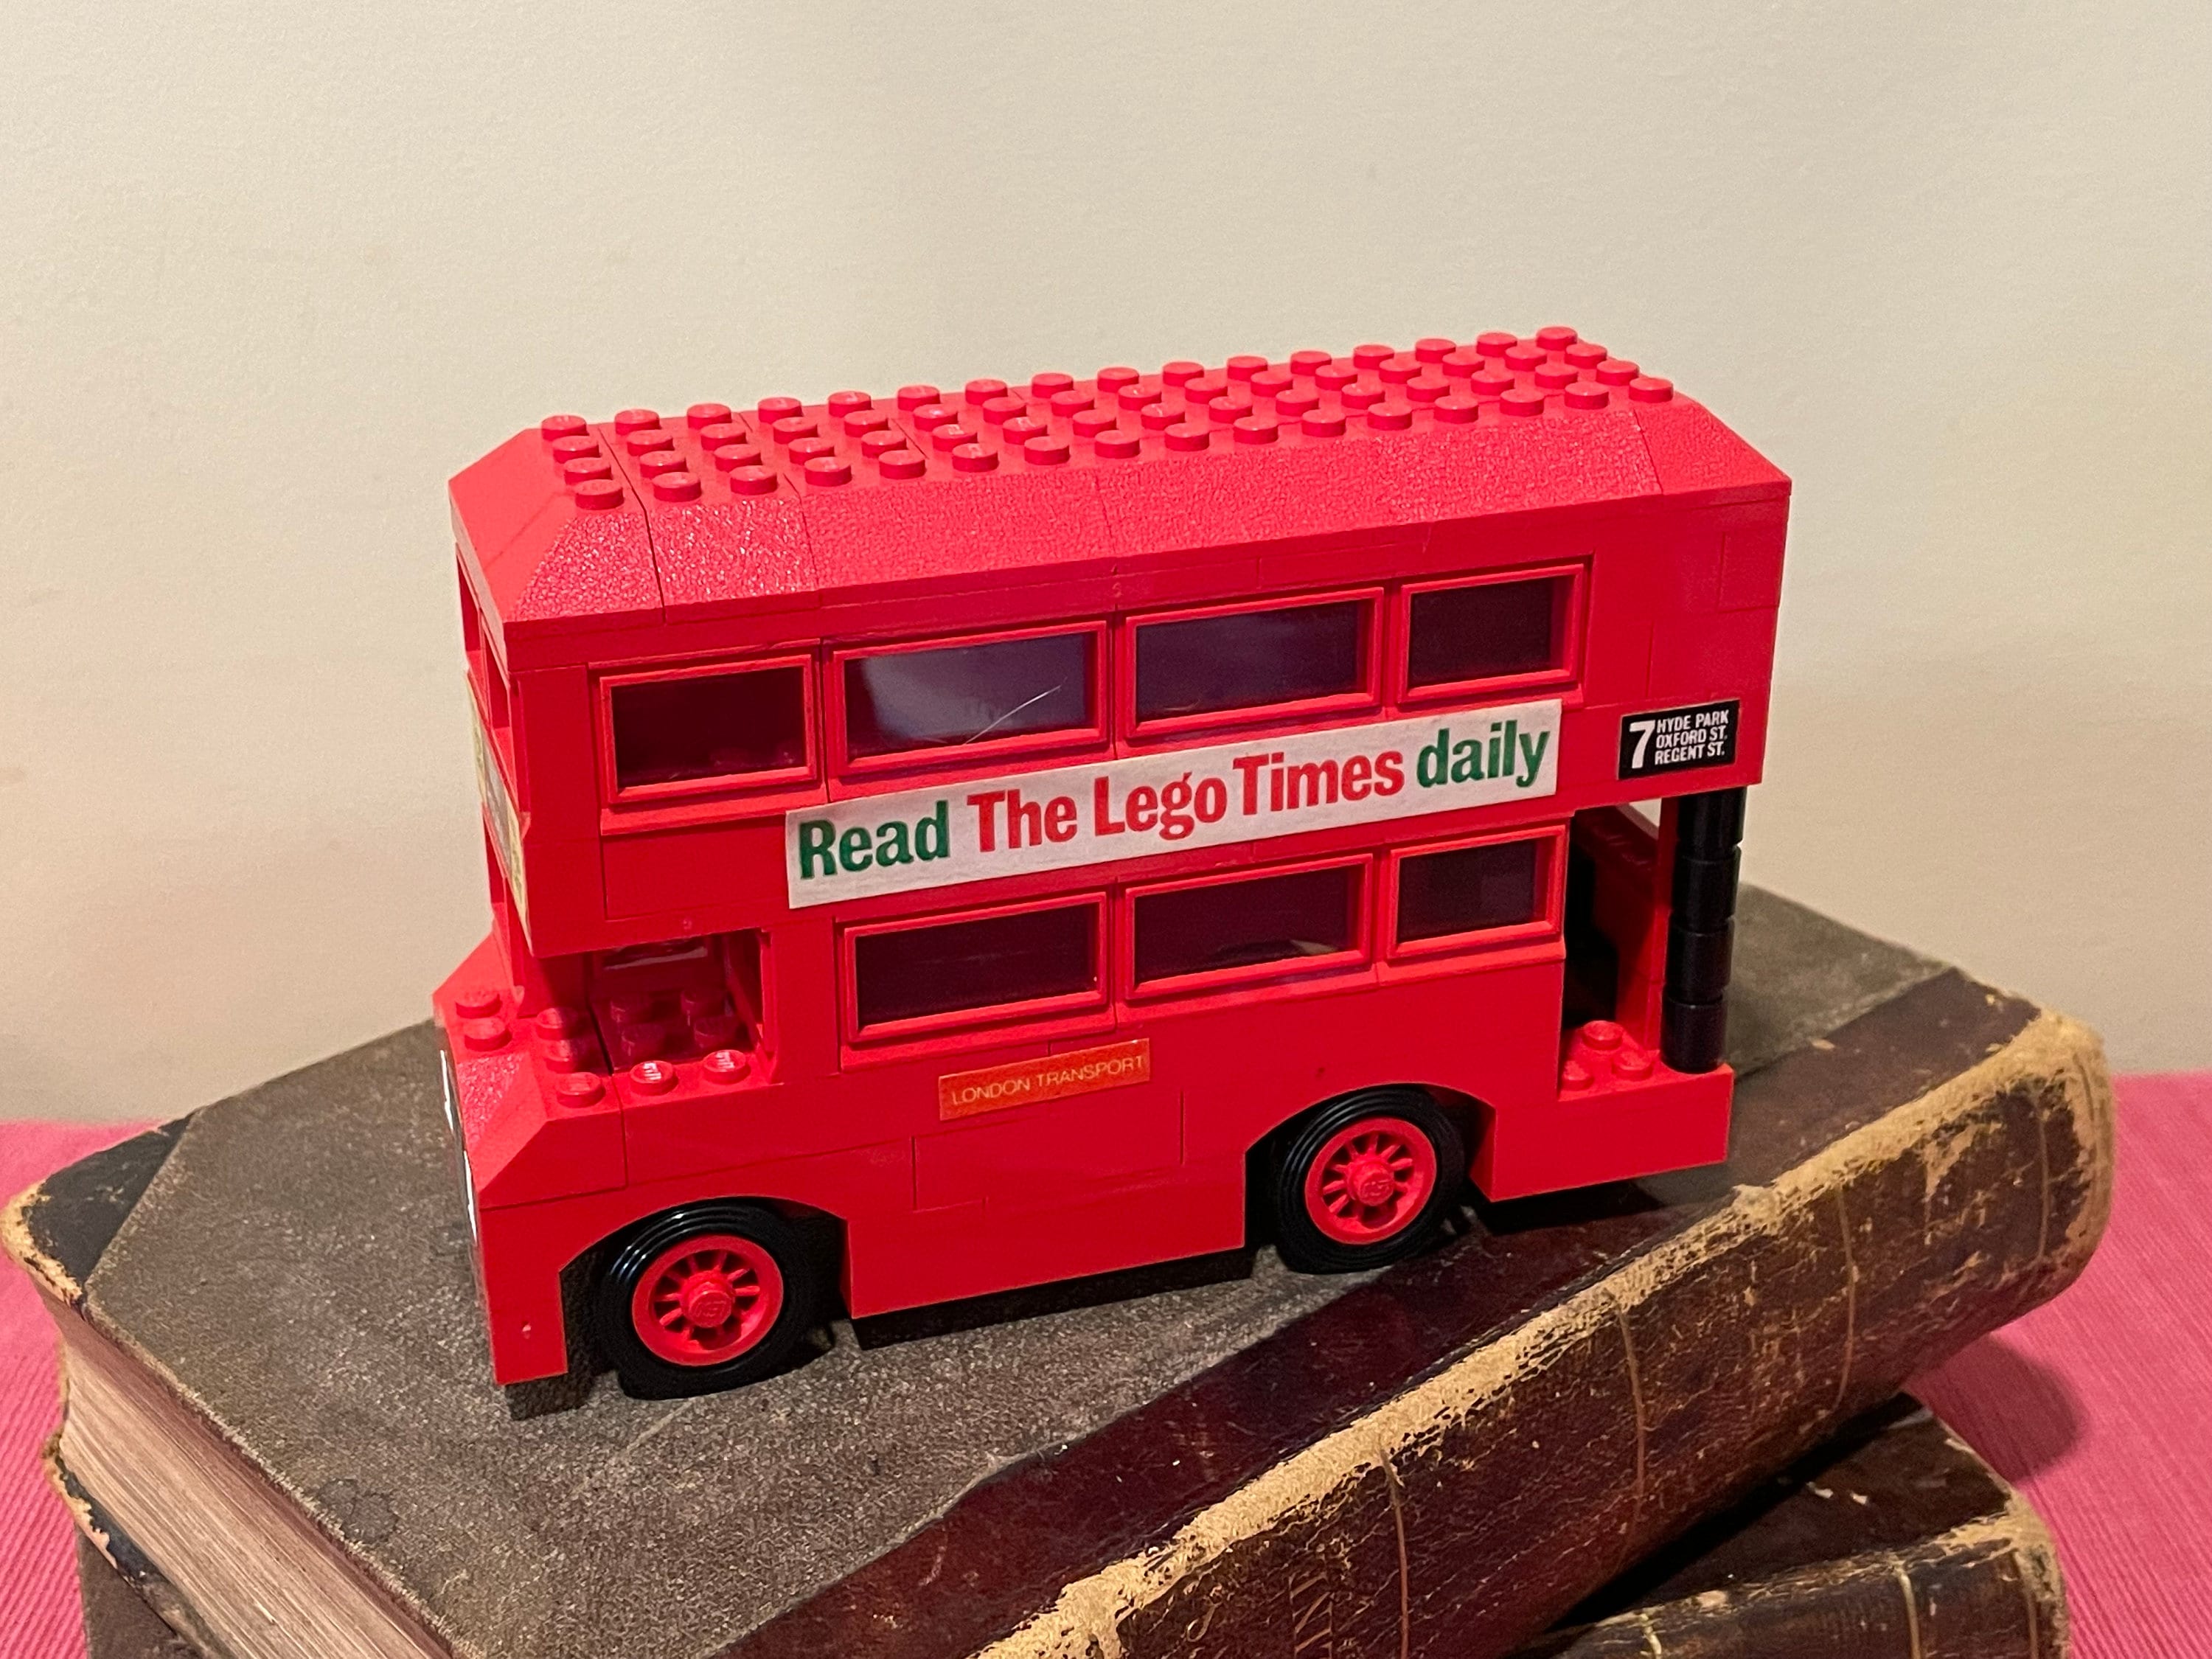 Lego Bus londonien, Brick-It, Location de Lego